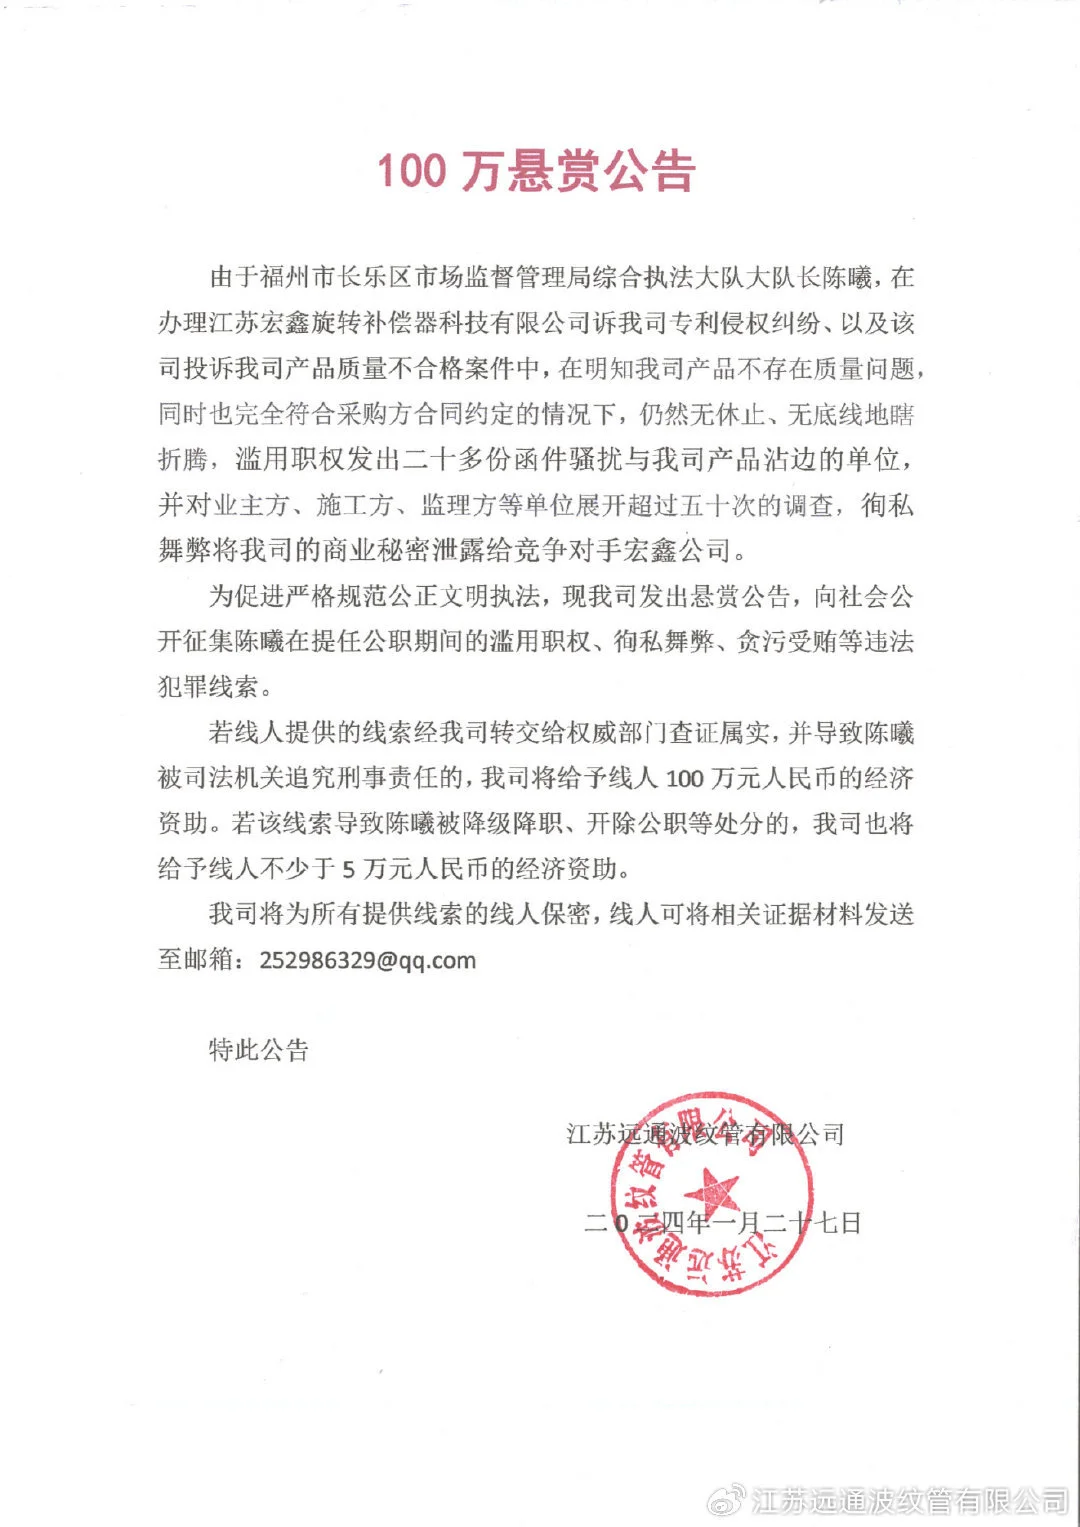 江苏远通波纹管有限公司微博发布公告截图